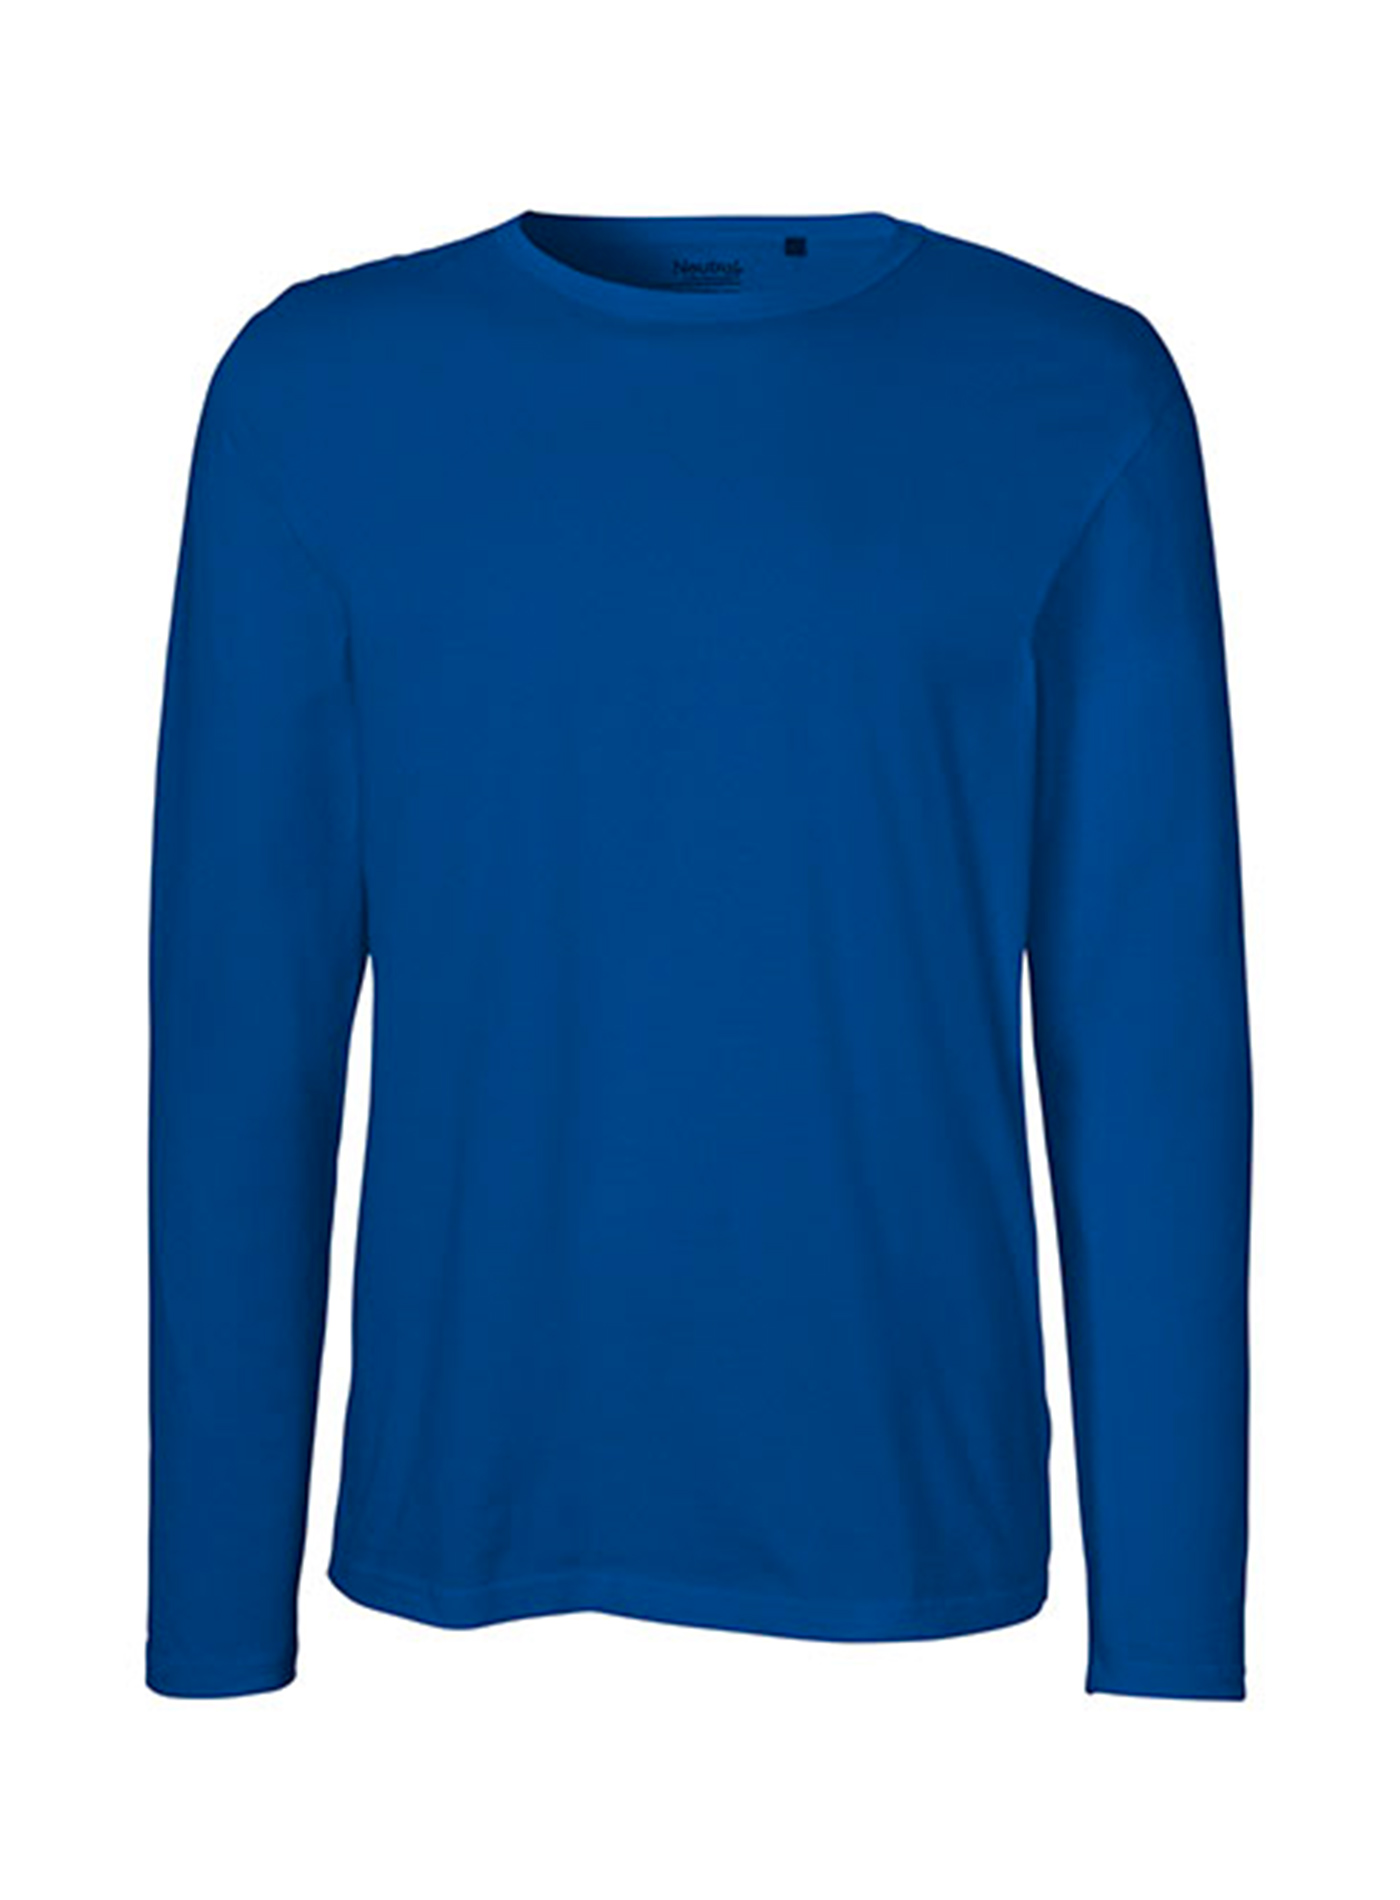 Pánské tričko s dlouhým rukávem Neutral - Královská modrá XXL